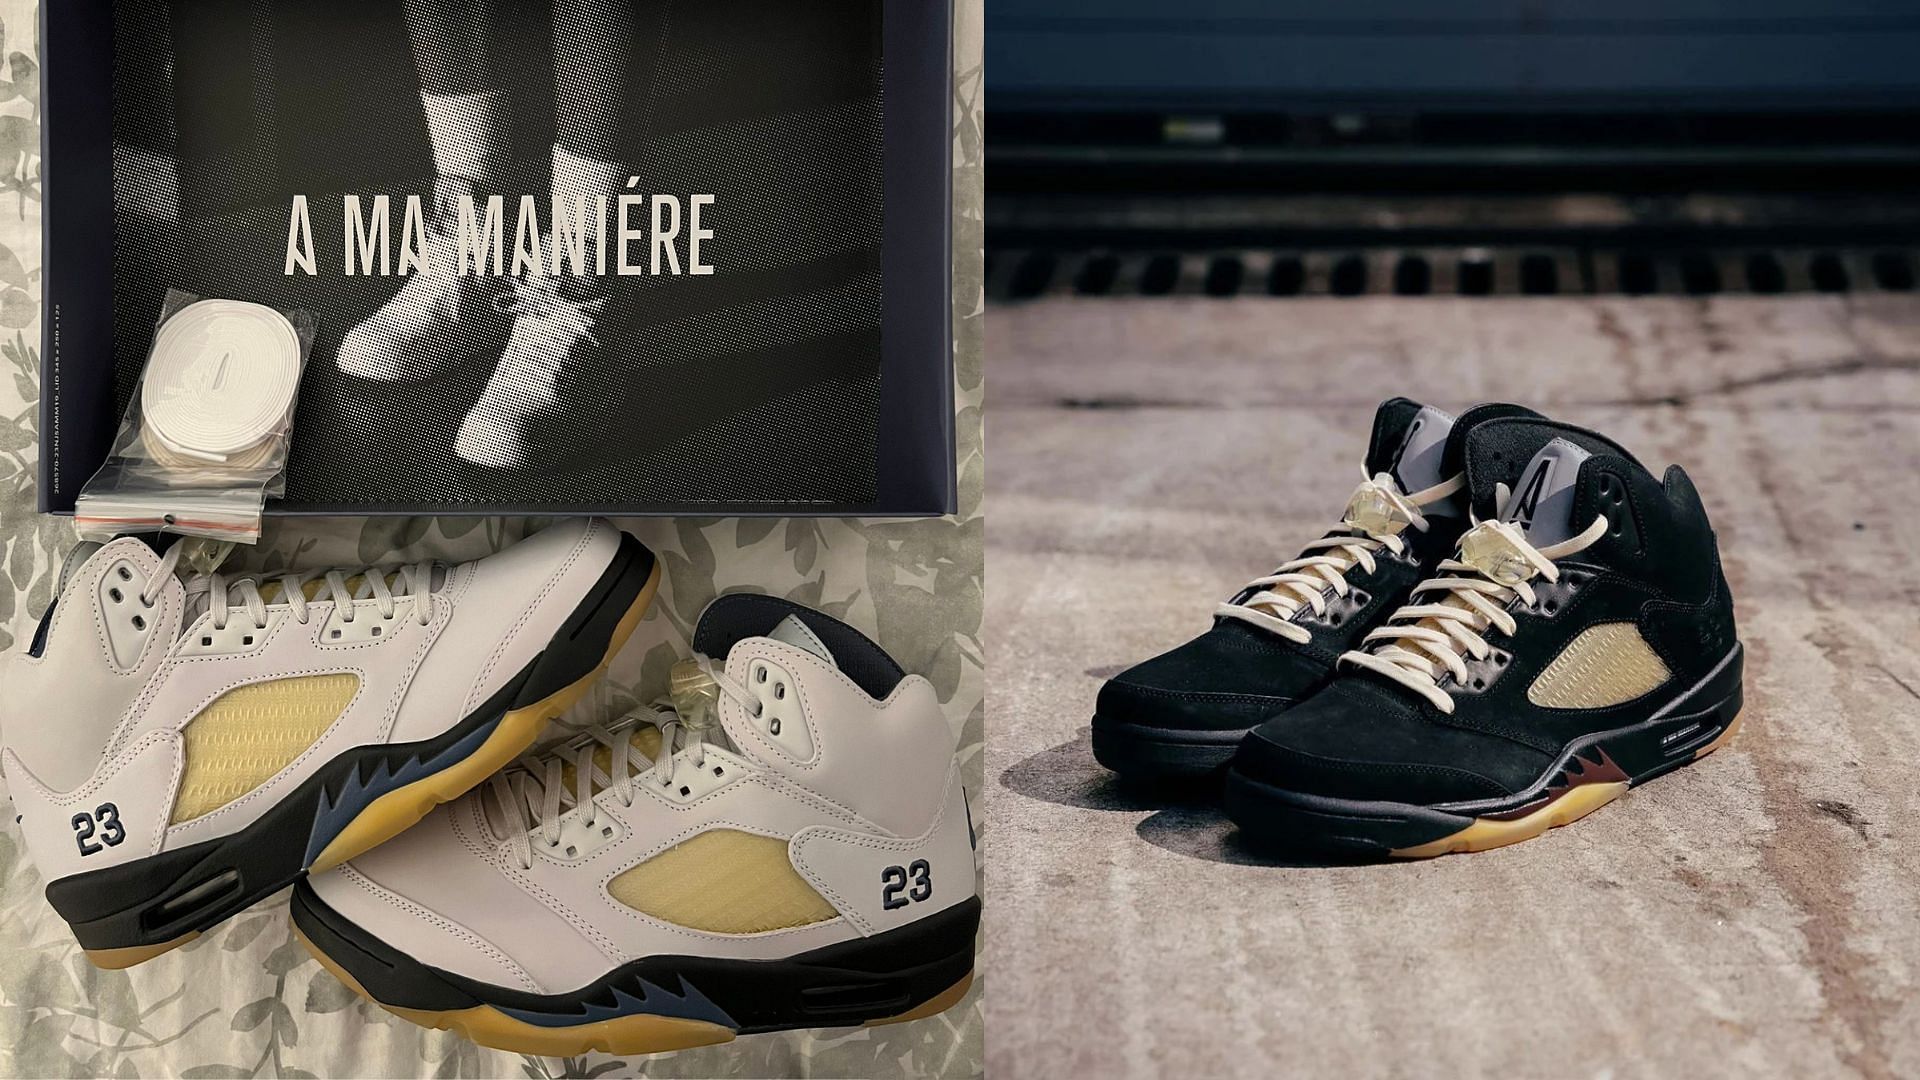 Air Jordan 5 x A Ma Maniere sneaker pack (Image via A Ma Maniere)